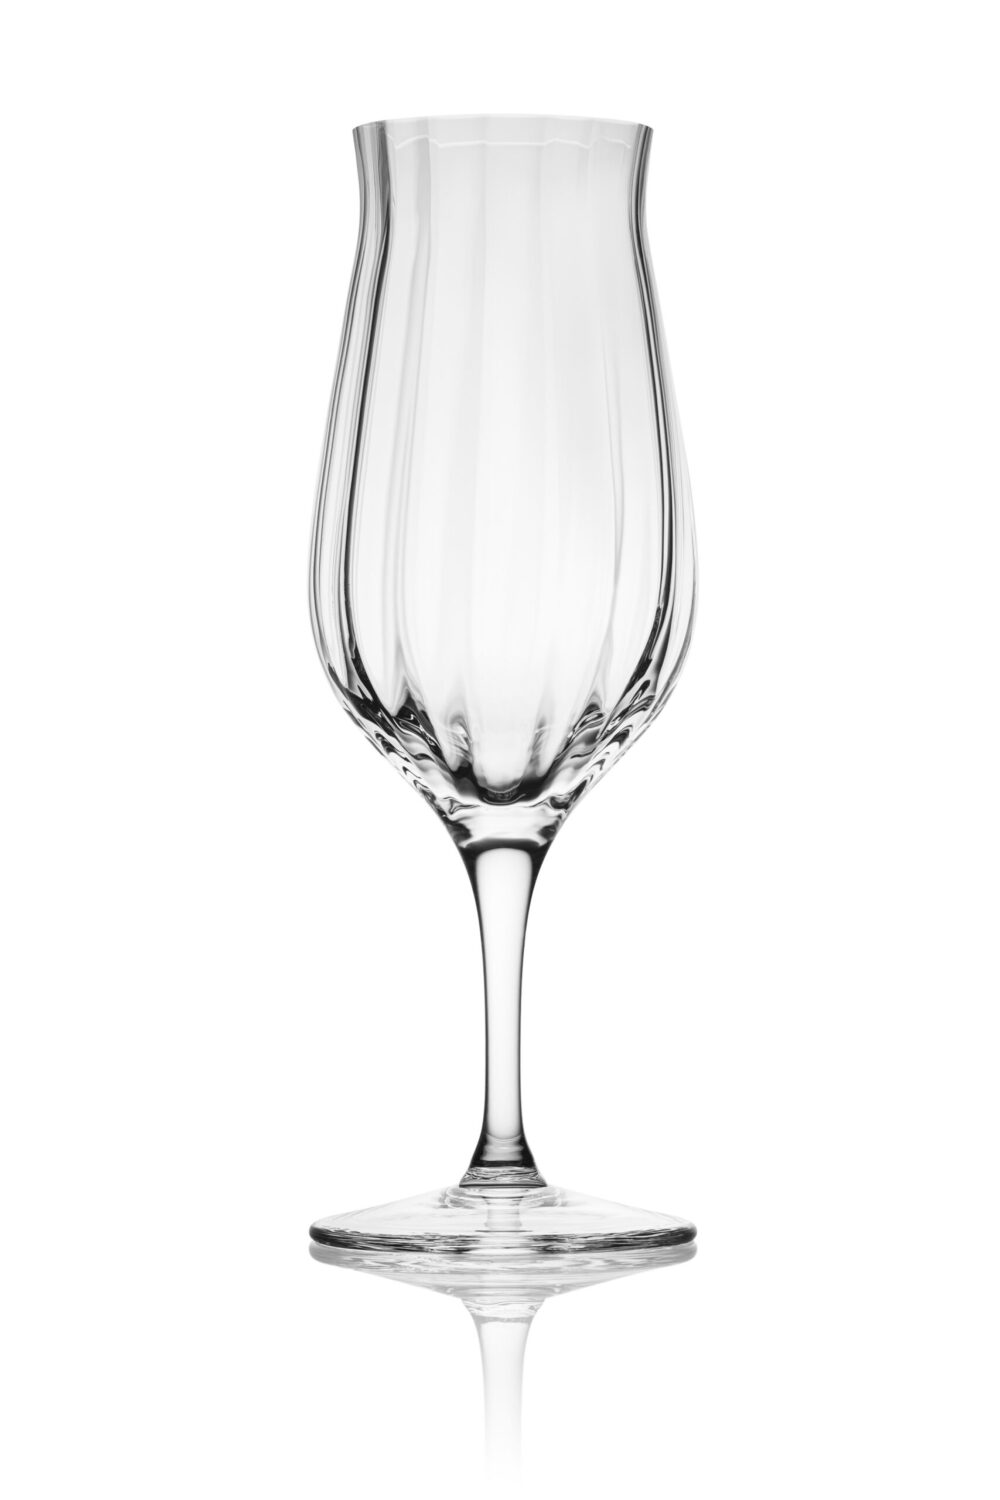 Kieliszek do degustacji whisky g120 marki Amber Glass